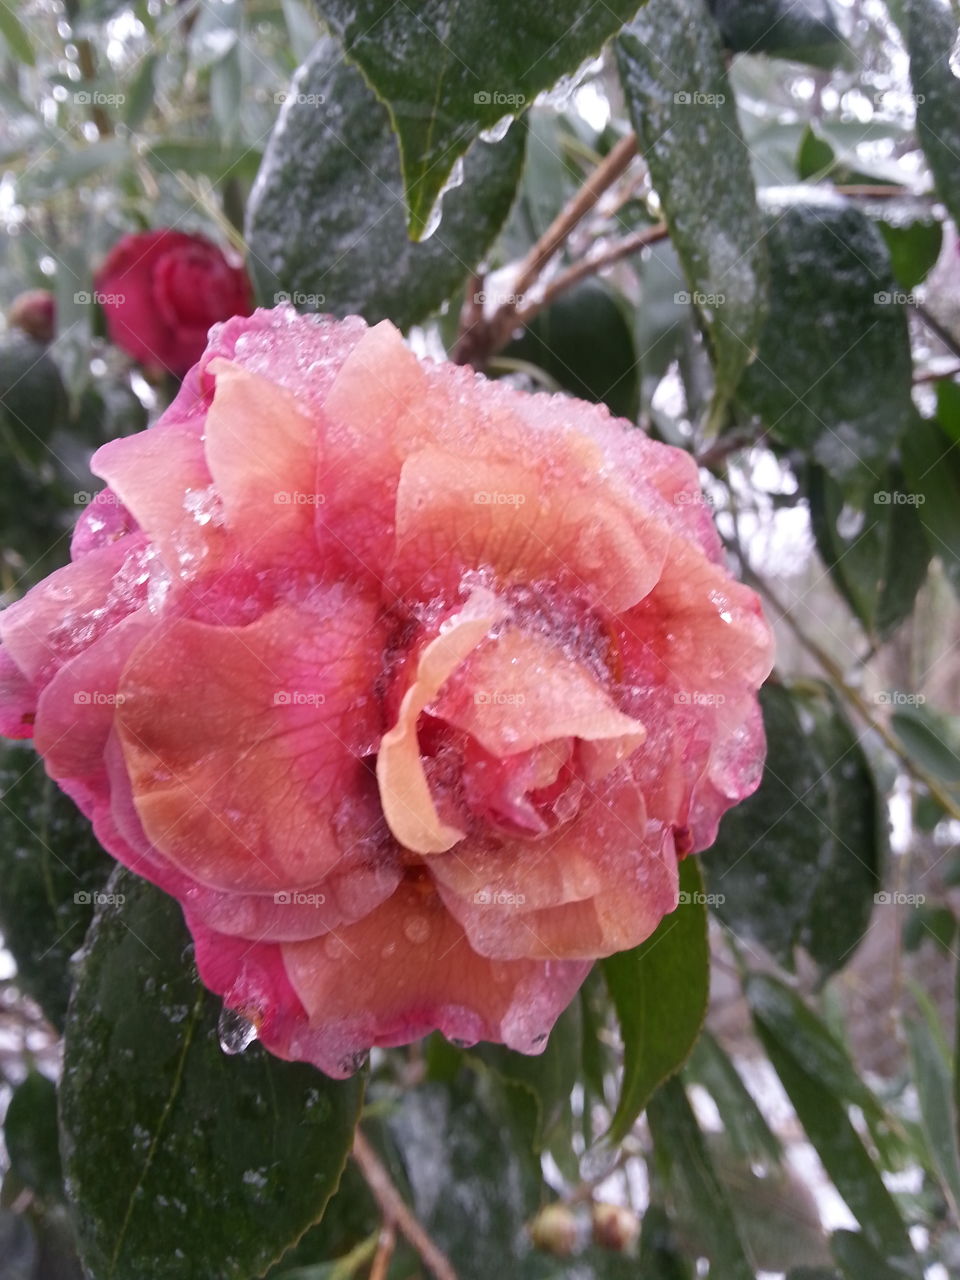 Icy petals